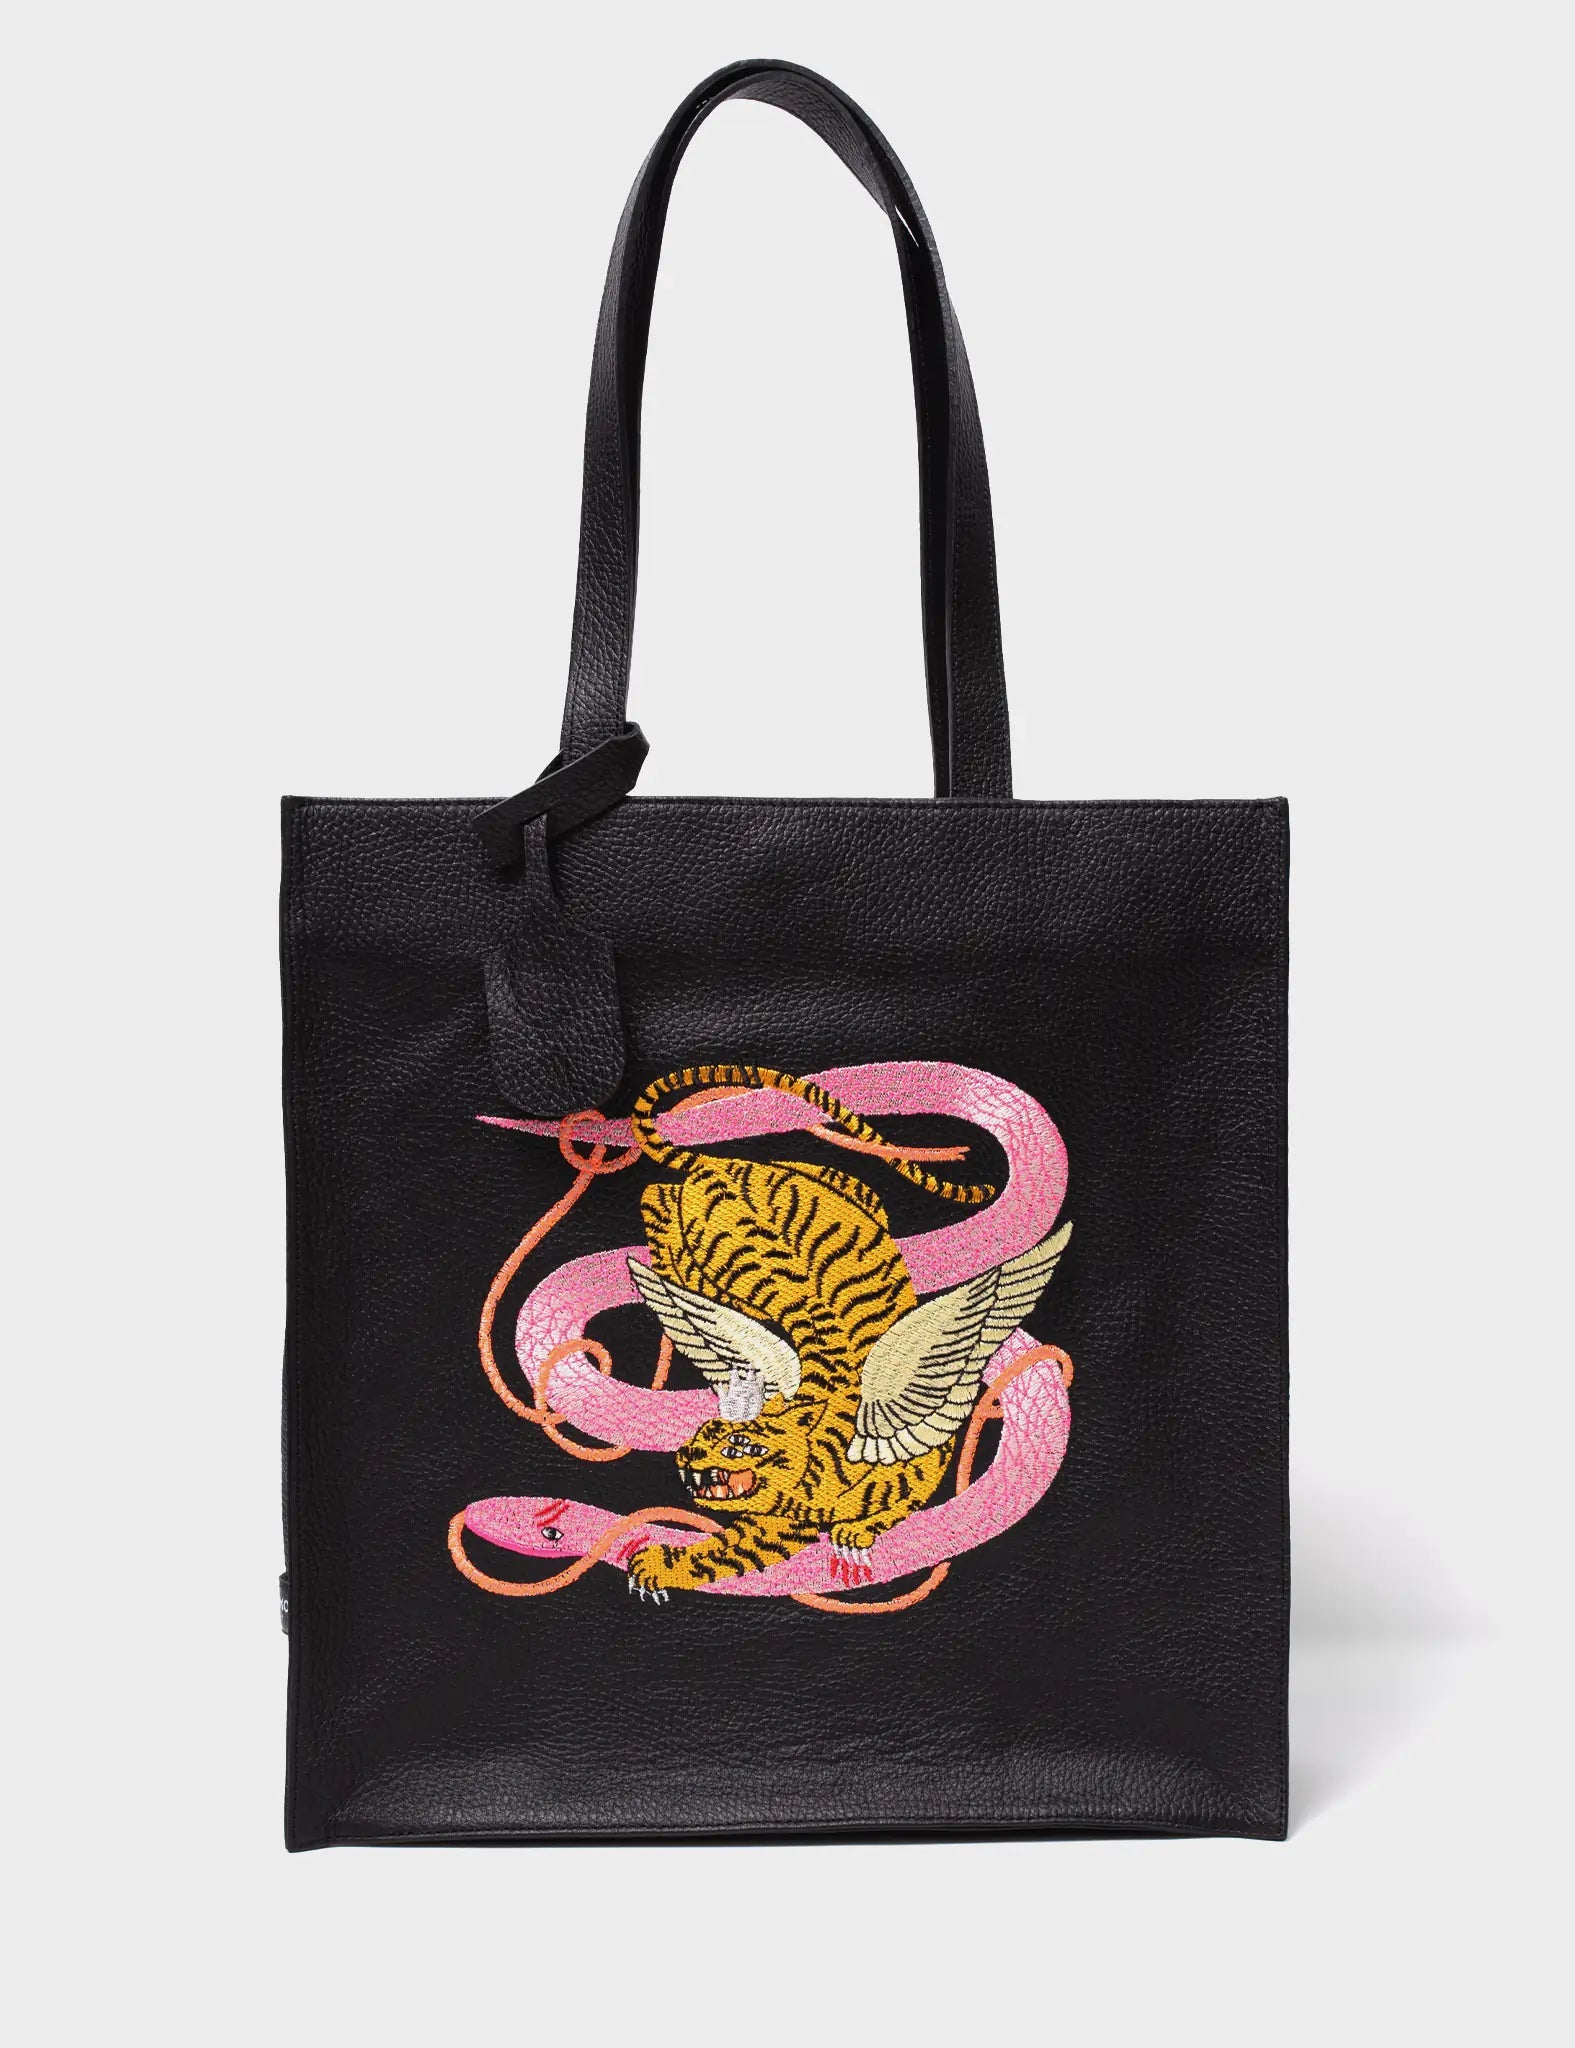 Black Leather Tote Bag - Tangled Tiger & Snake Print Original Design - Front